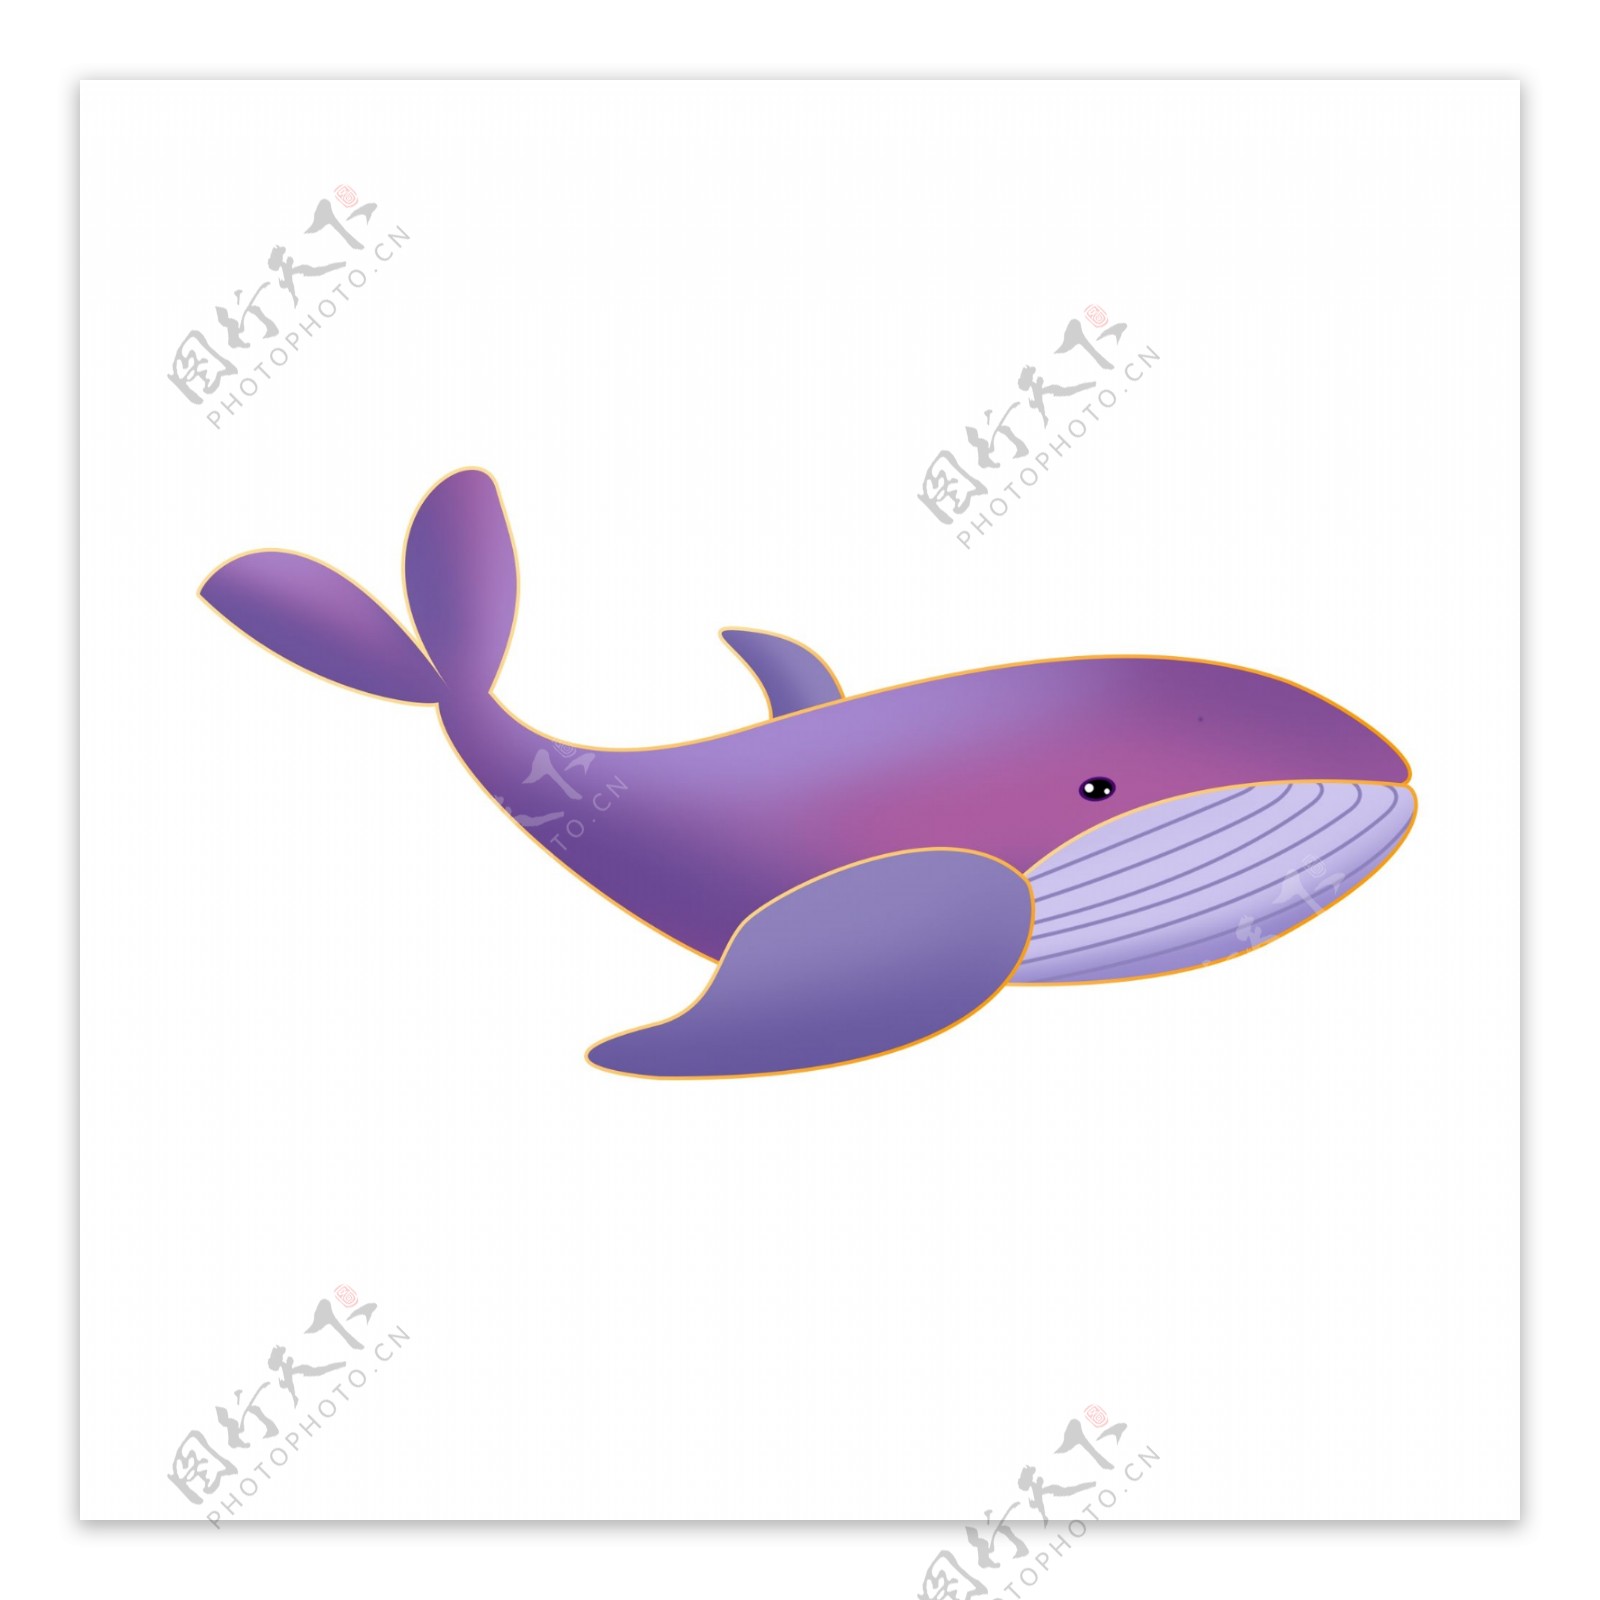 一只粉色的可爱鲸鱼卡通元素